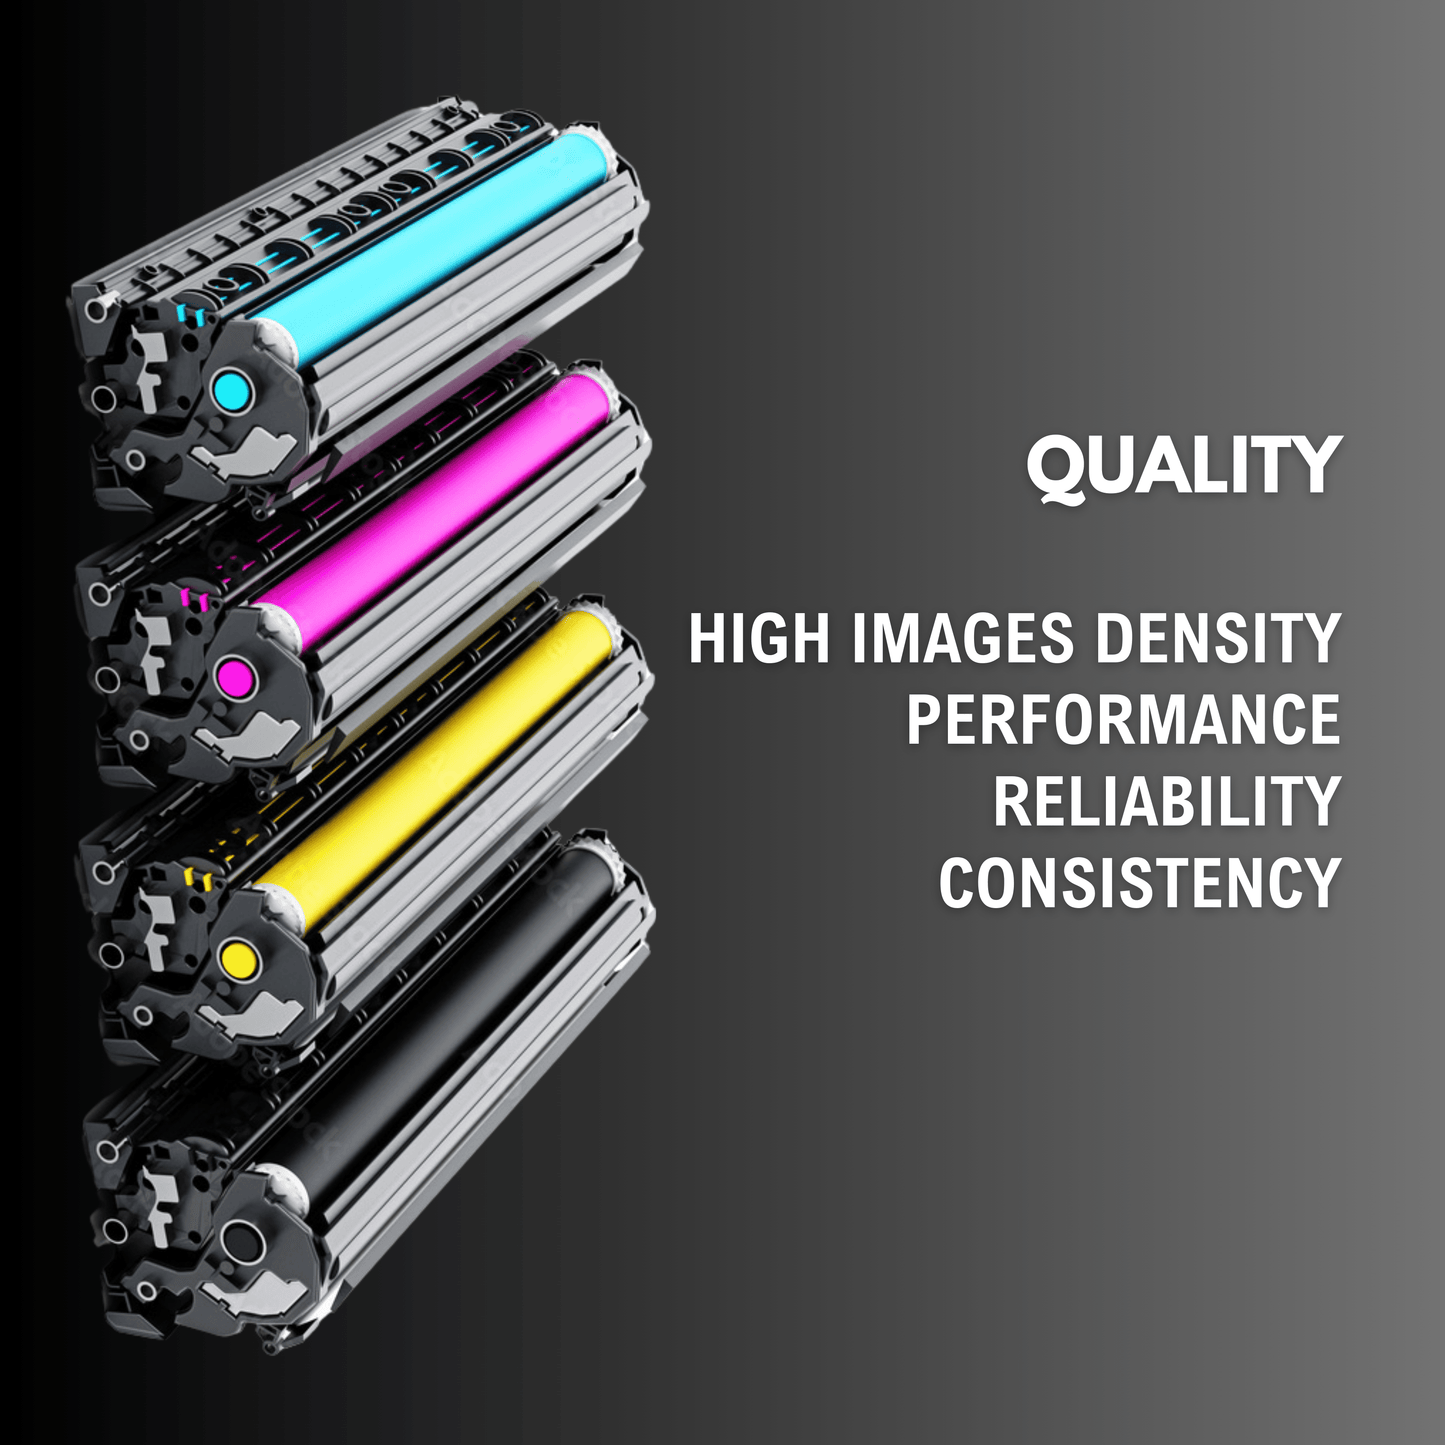 LeveeAnce 337 Toner Cartridge For Use In Canon Printer Series imageCLASS MF244DW, MF226dn, MF232w, MF217w, MF241d, MF235, MF237w, MF241d,MF246dn,MF249dw